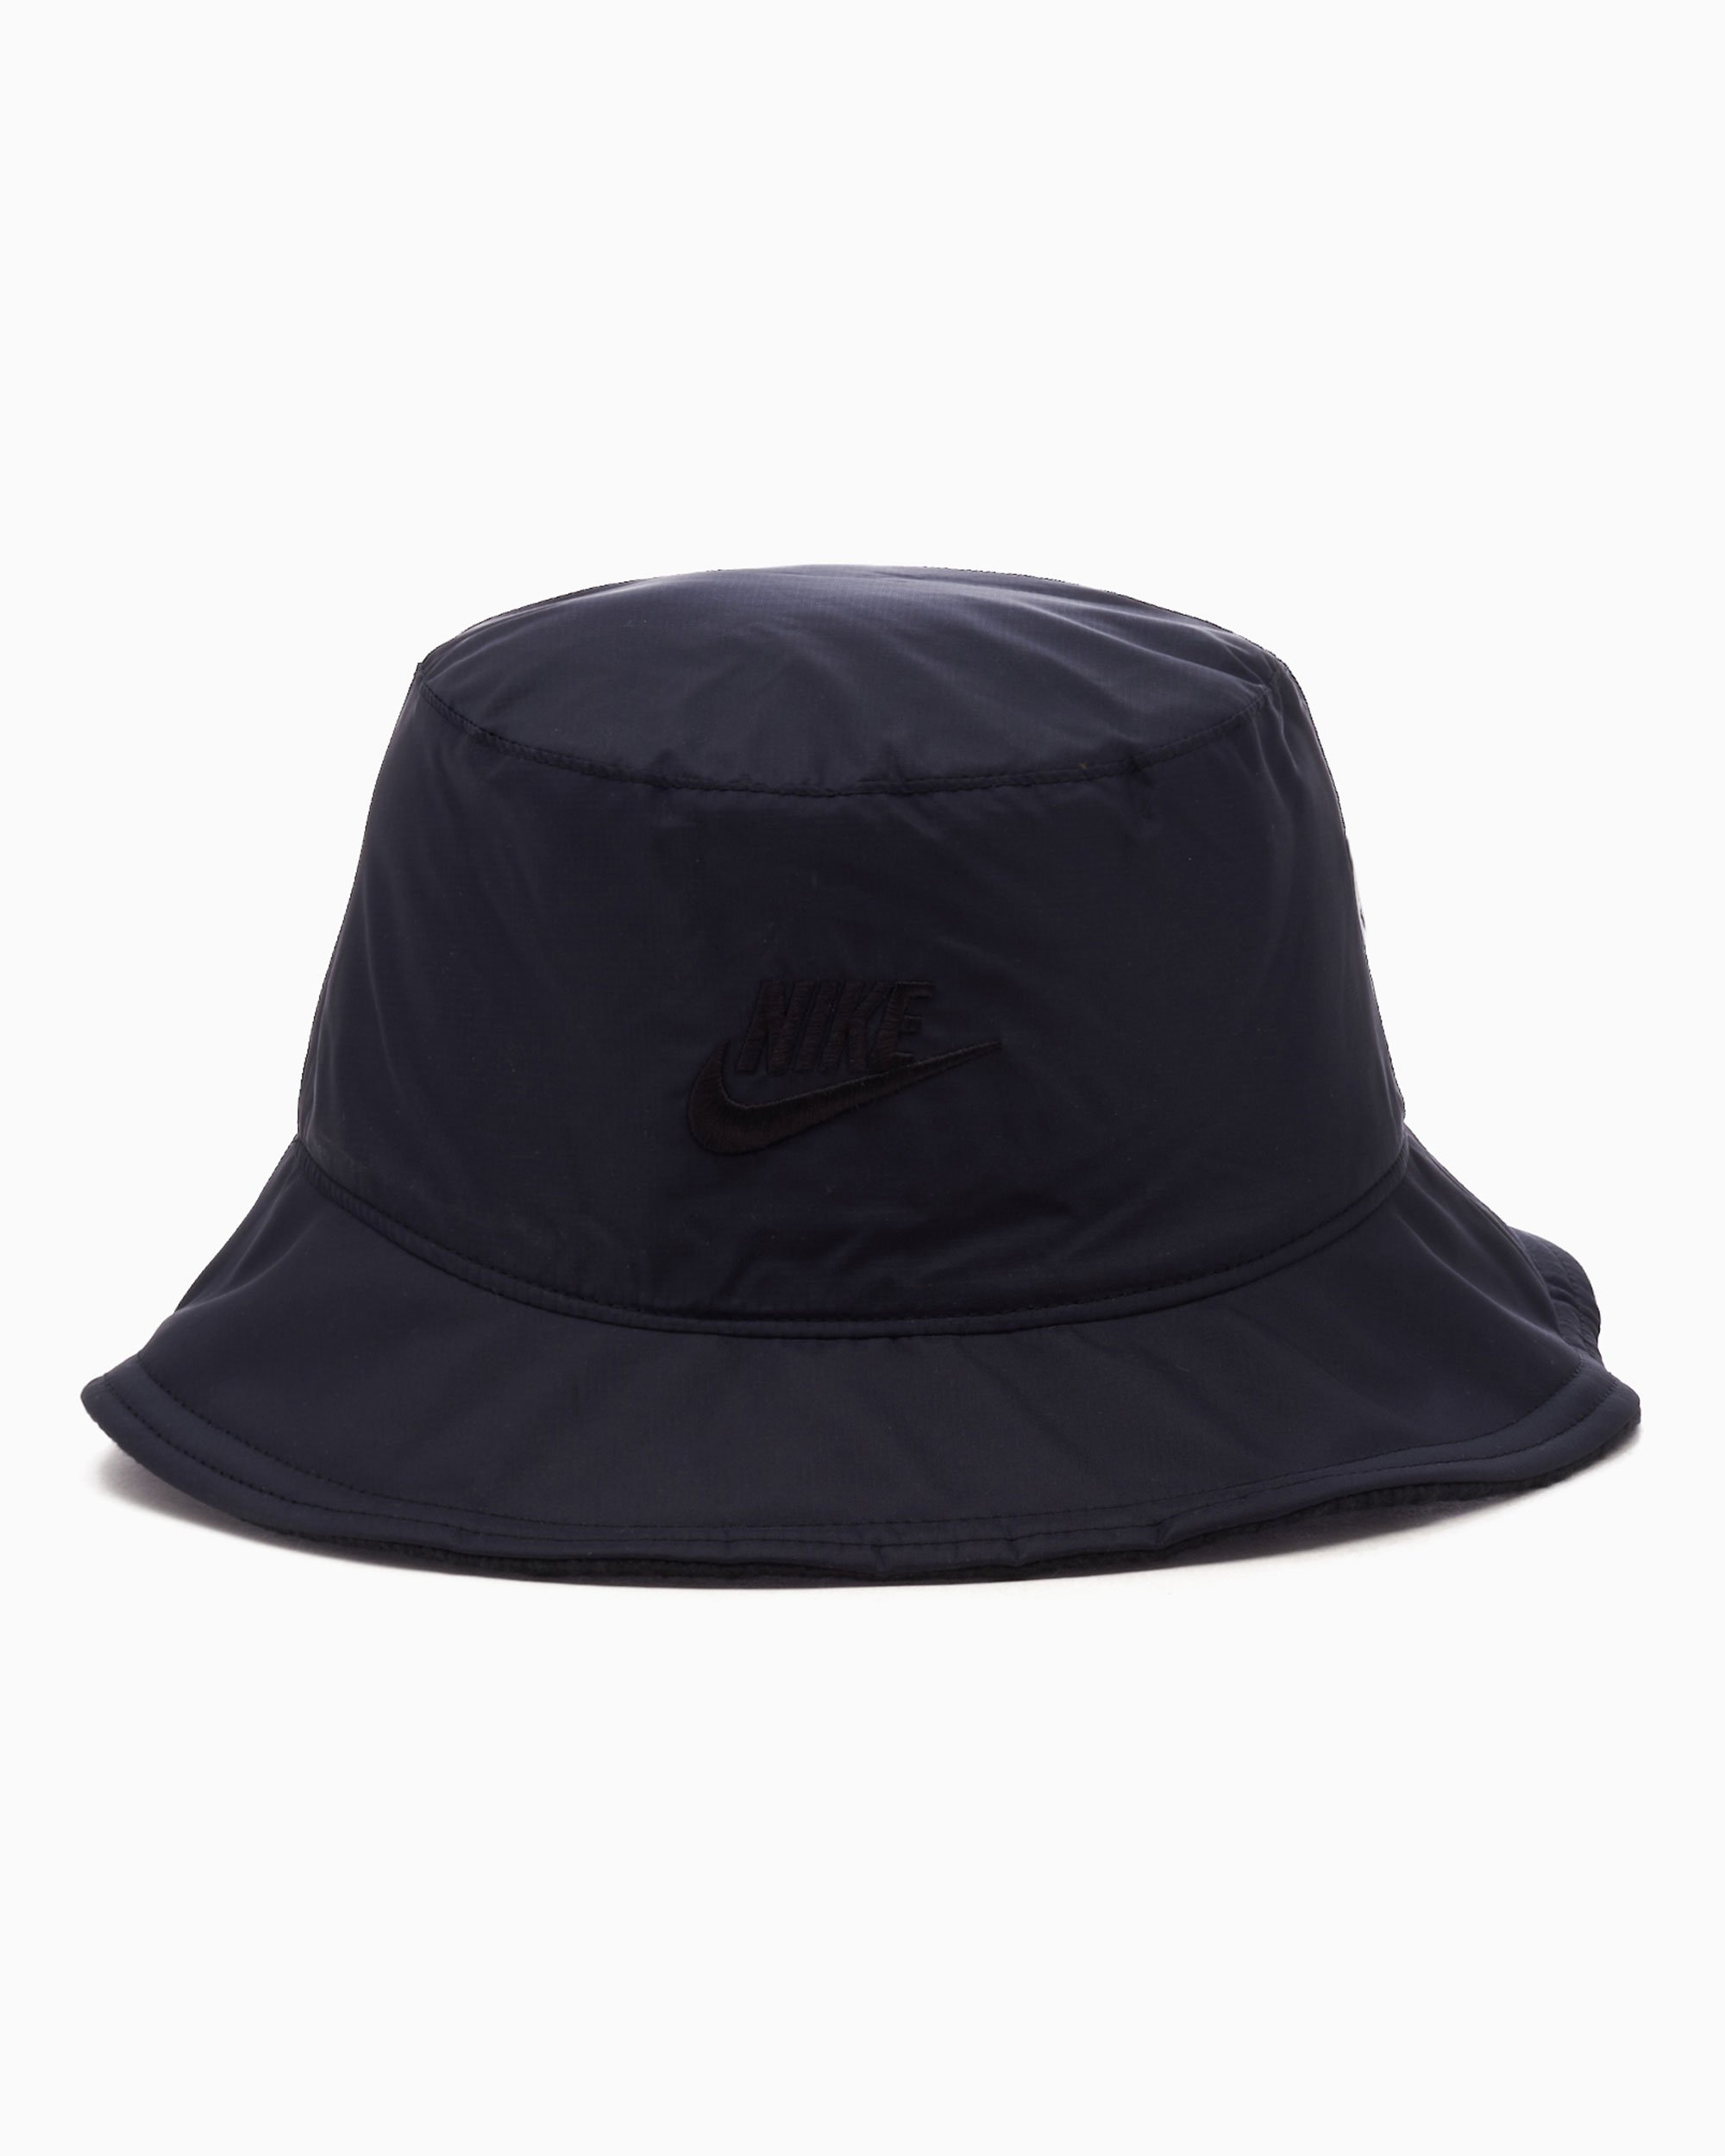 Nike Gents Sportswear Bucket Hat M/L Black 010